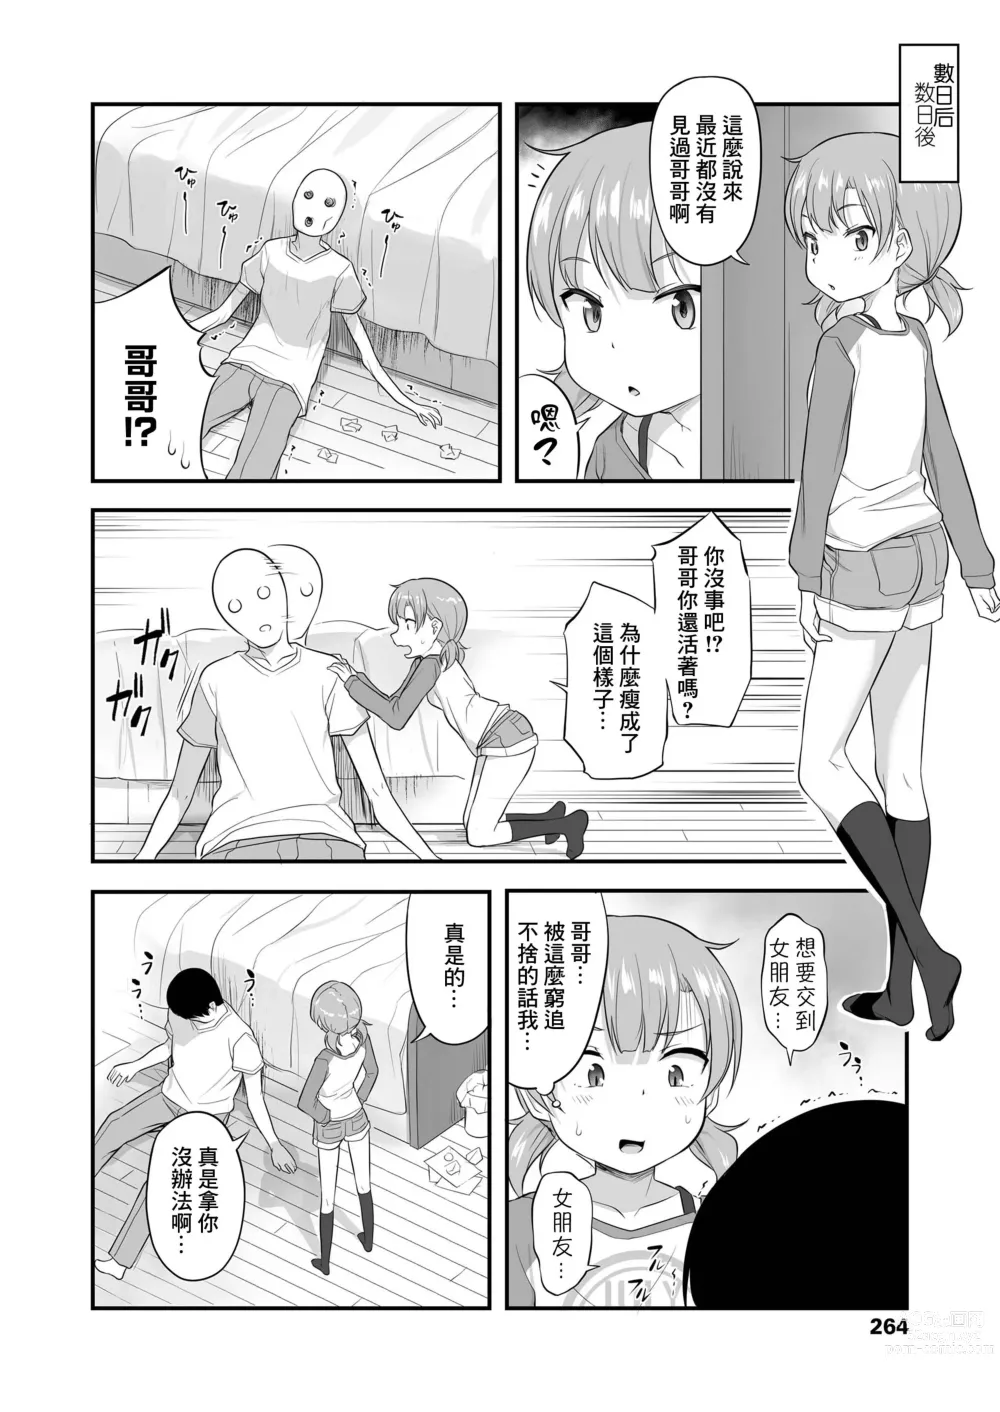 Page 4 of manga Imouto Gokoro to Haru no Sora